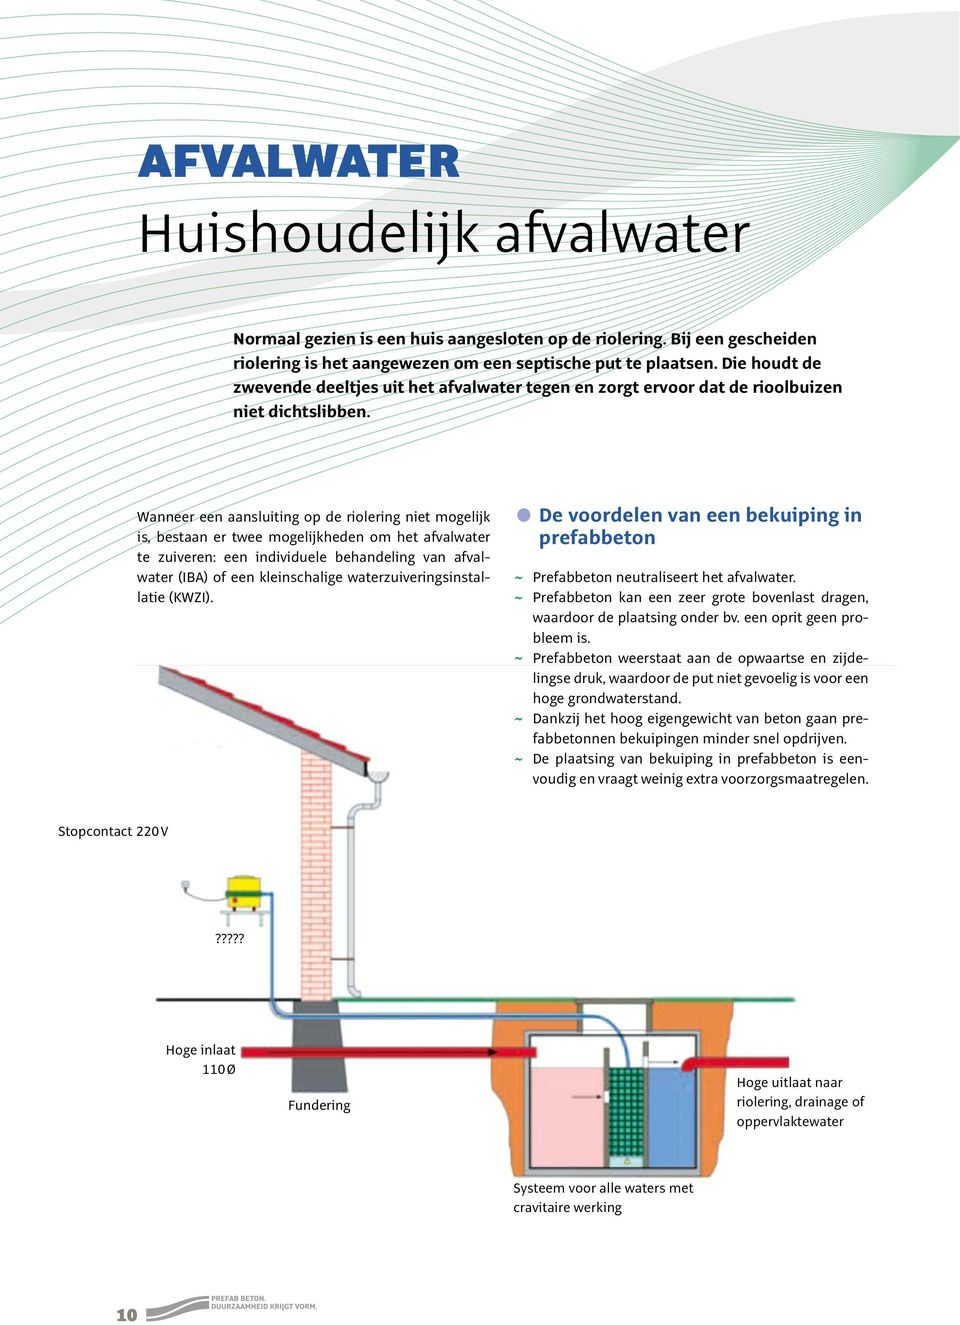 Wanneer een aansluiting op de riolering niet mogelijk is, bestaan er twee mogelijkheden om het afvalwater te zuiveren: een individuele behandeling van afvalwater (IBA) of een kleinschalige